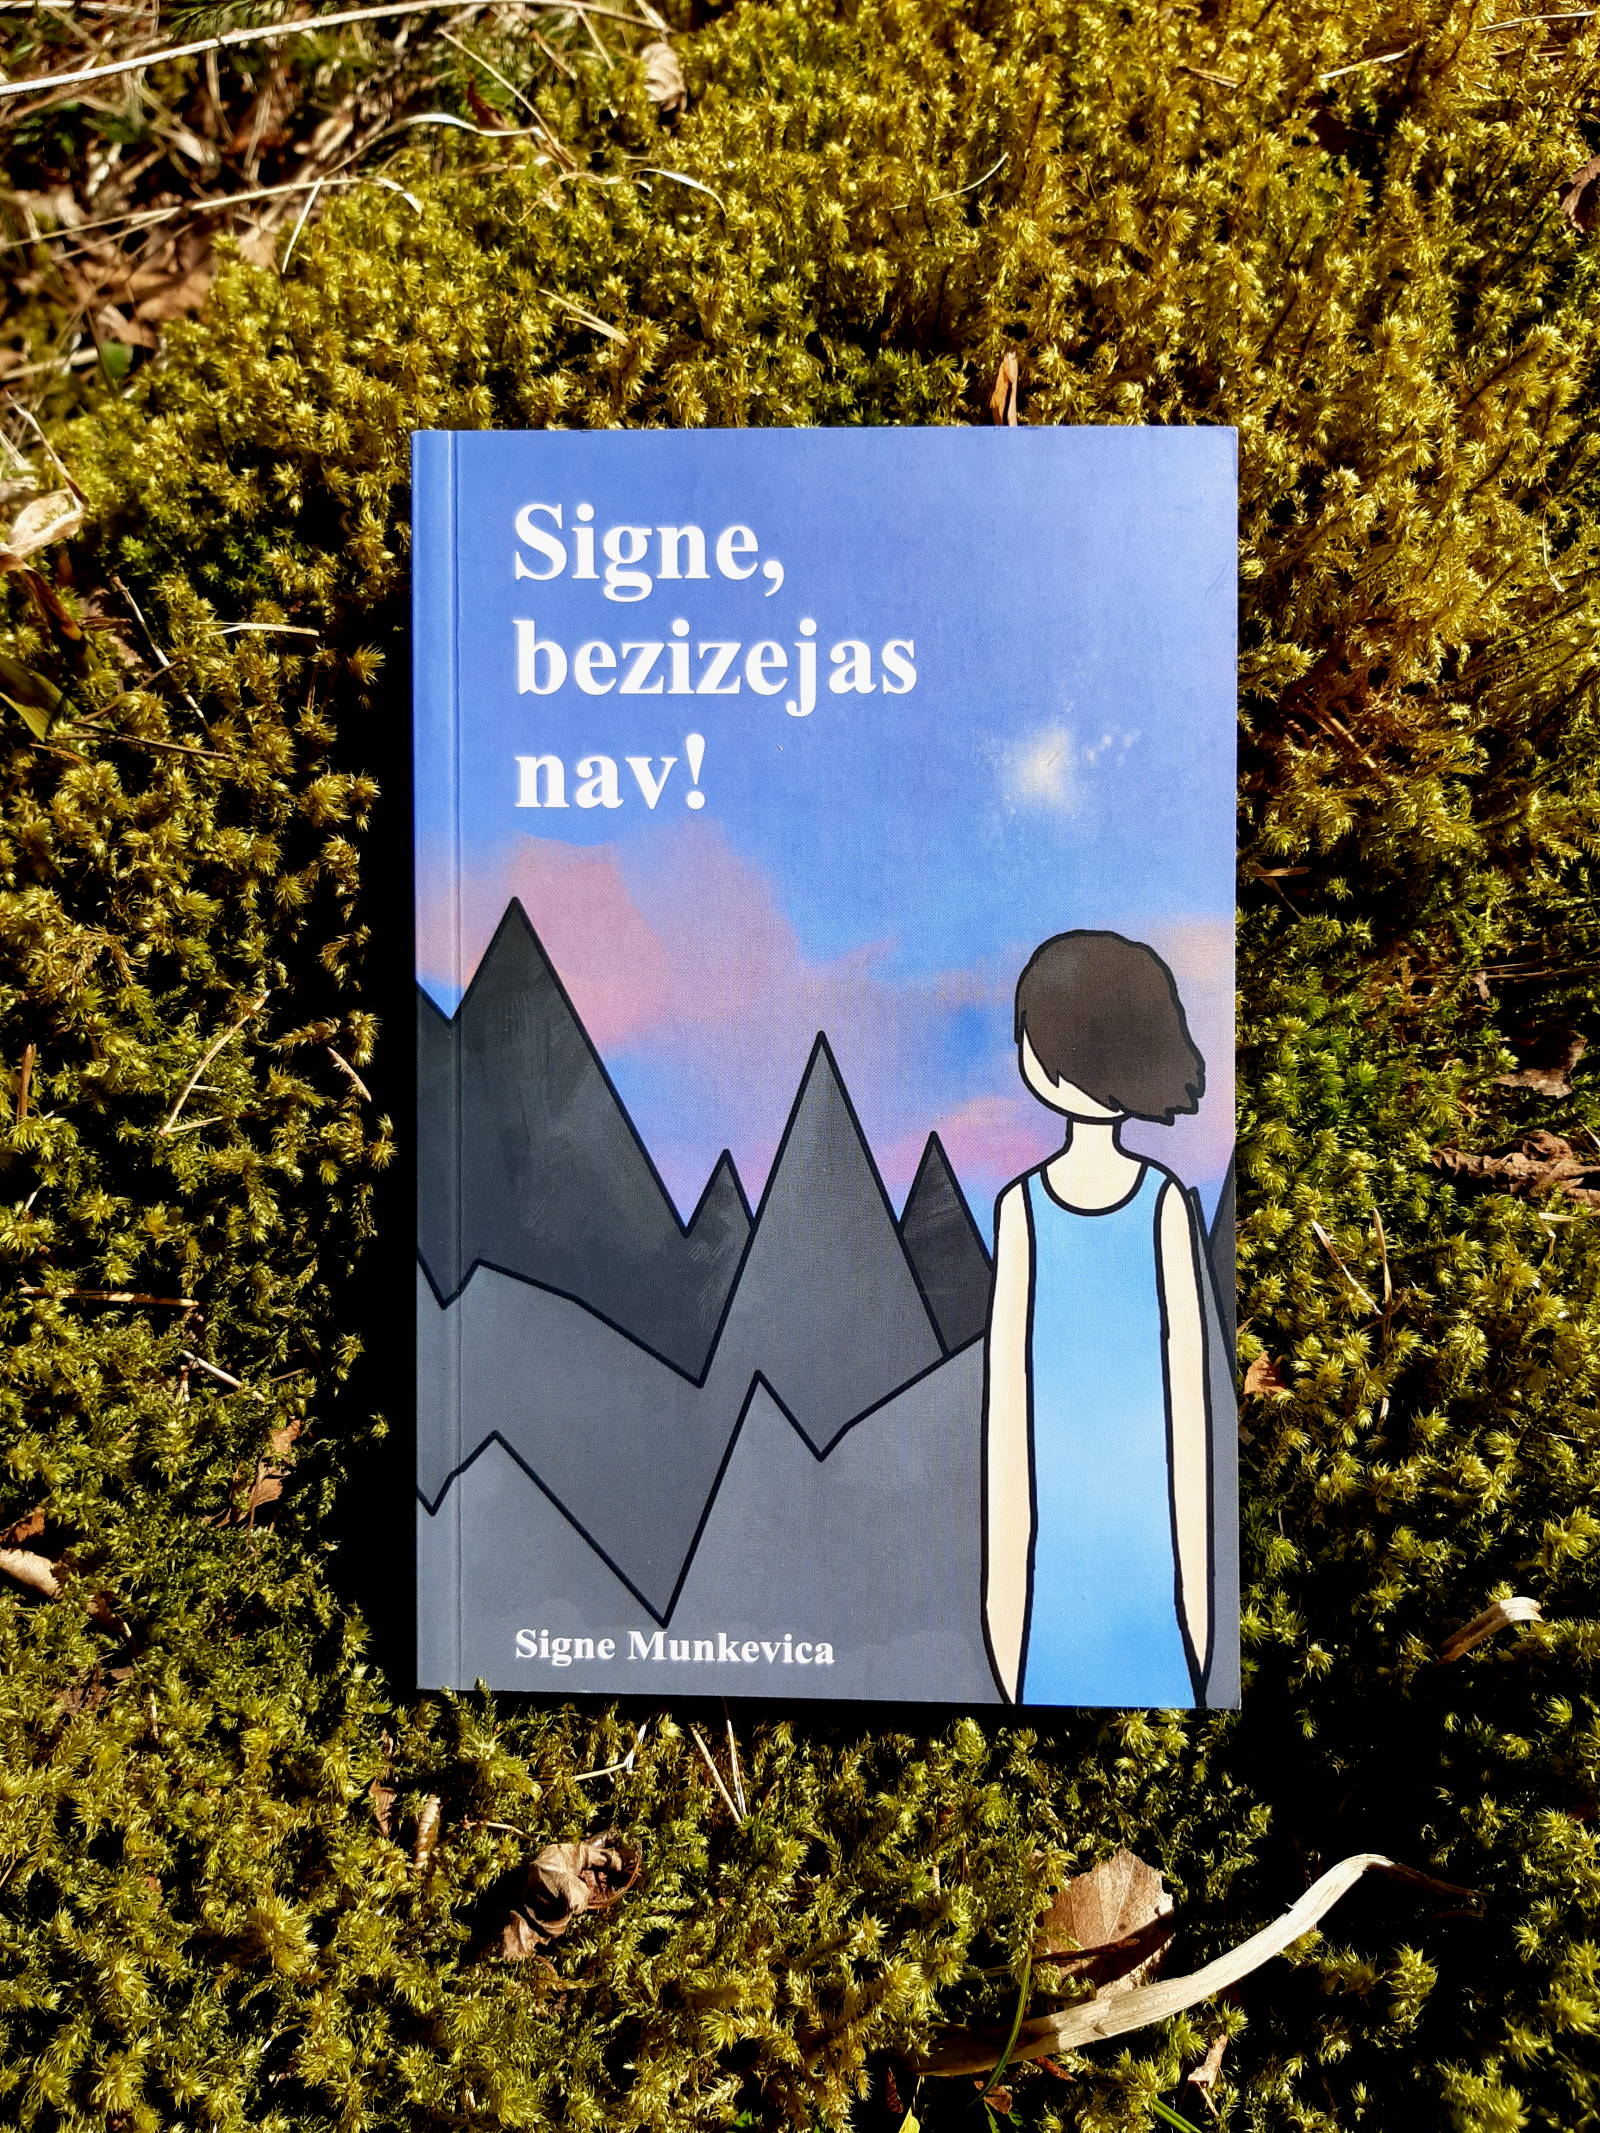 Grāmatas "Signe, bezizejas nav!" vāks. Autors, Signe Munkevica